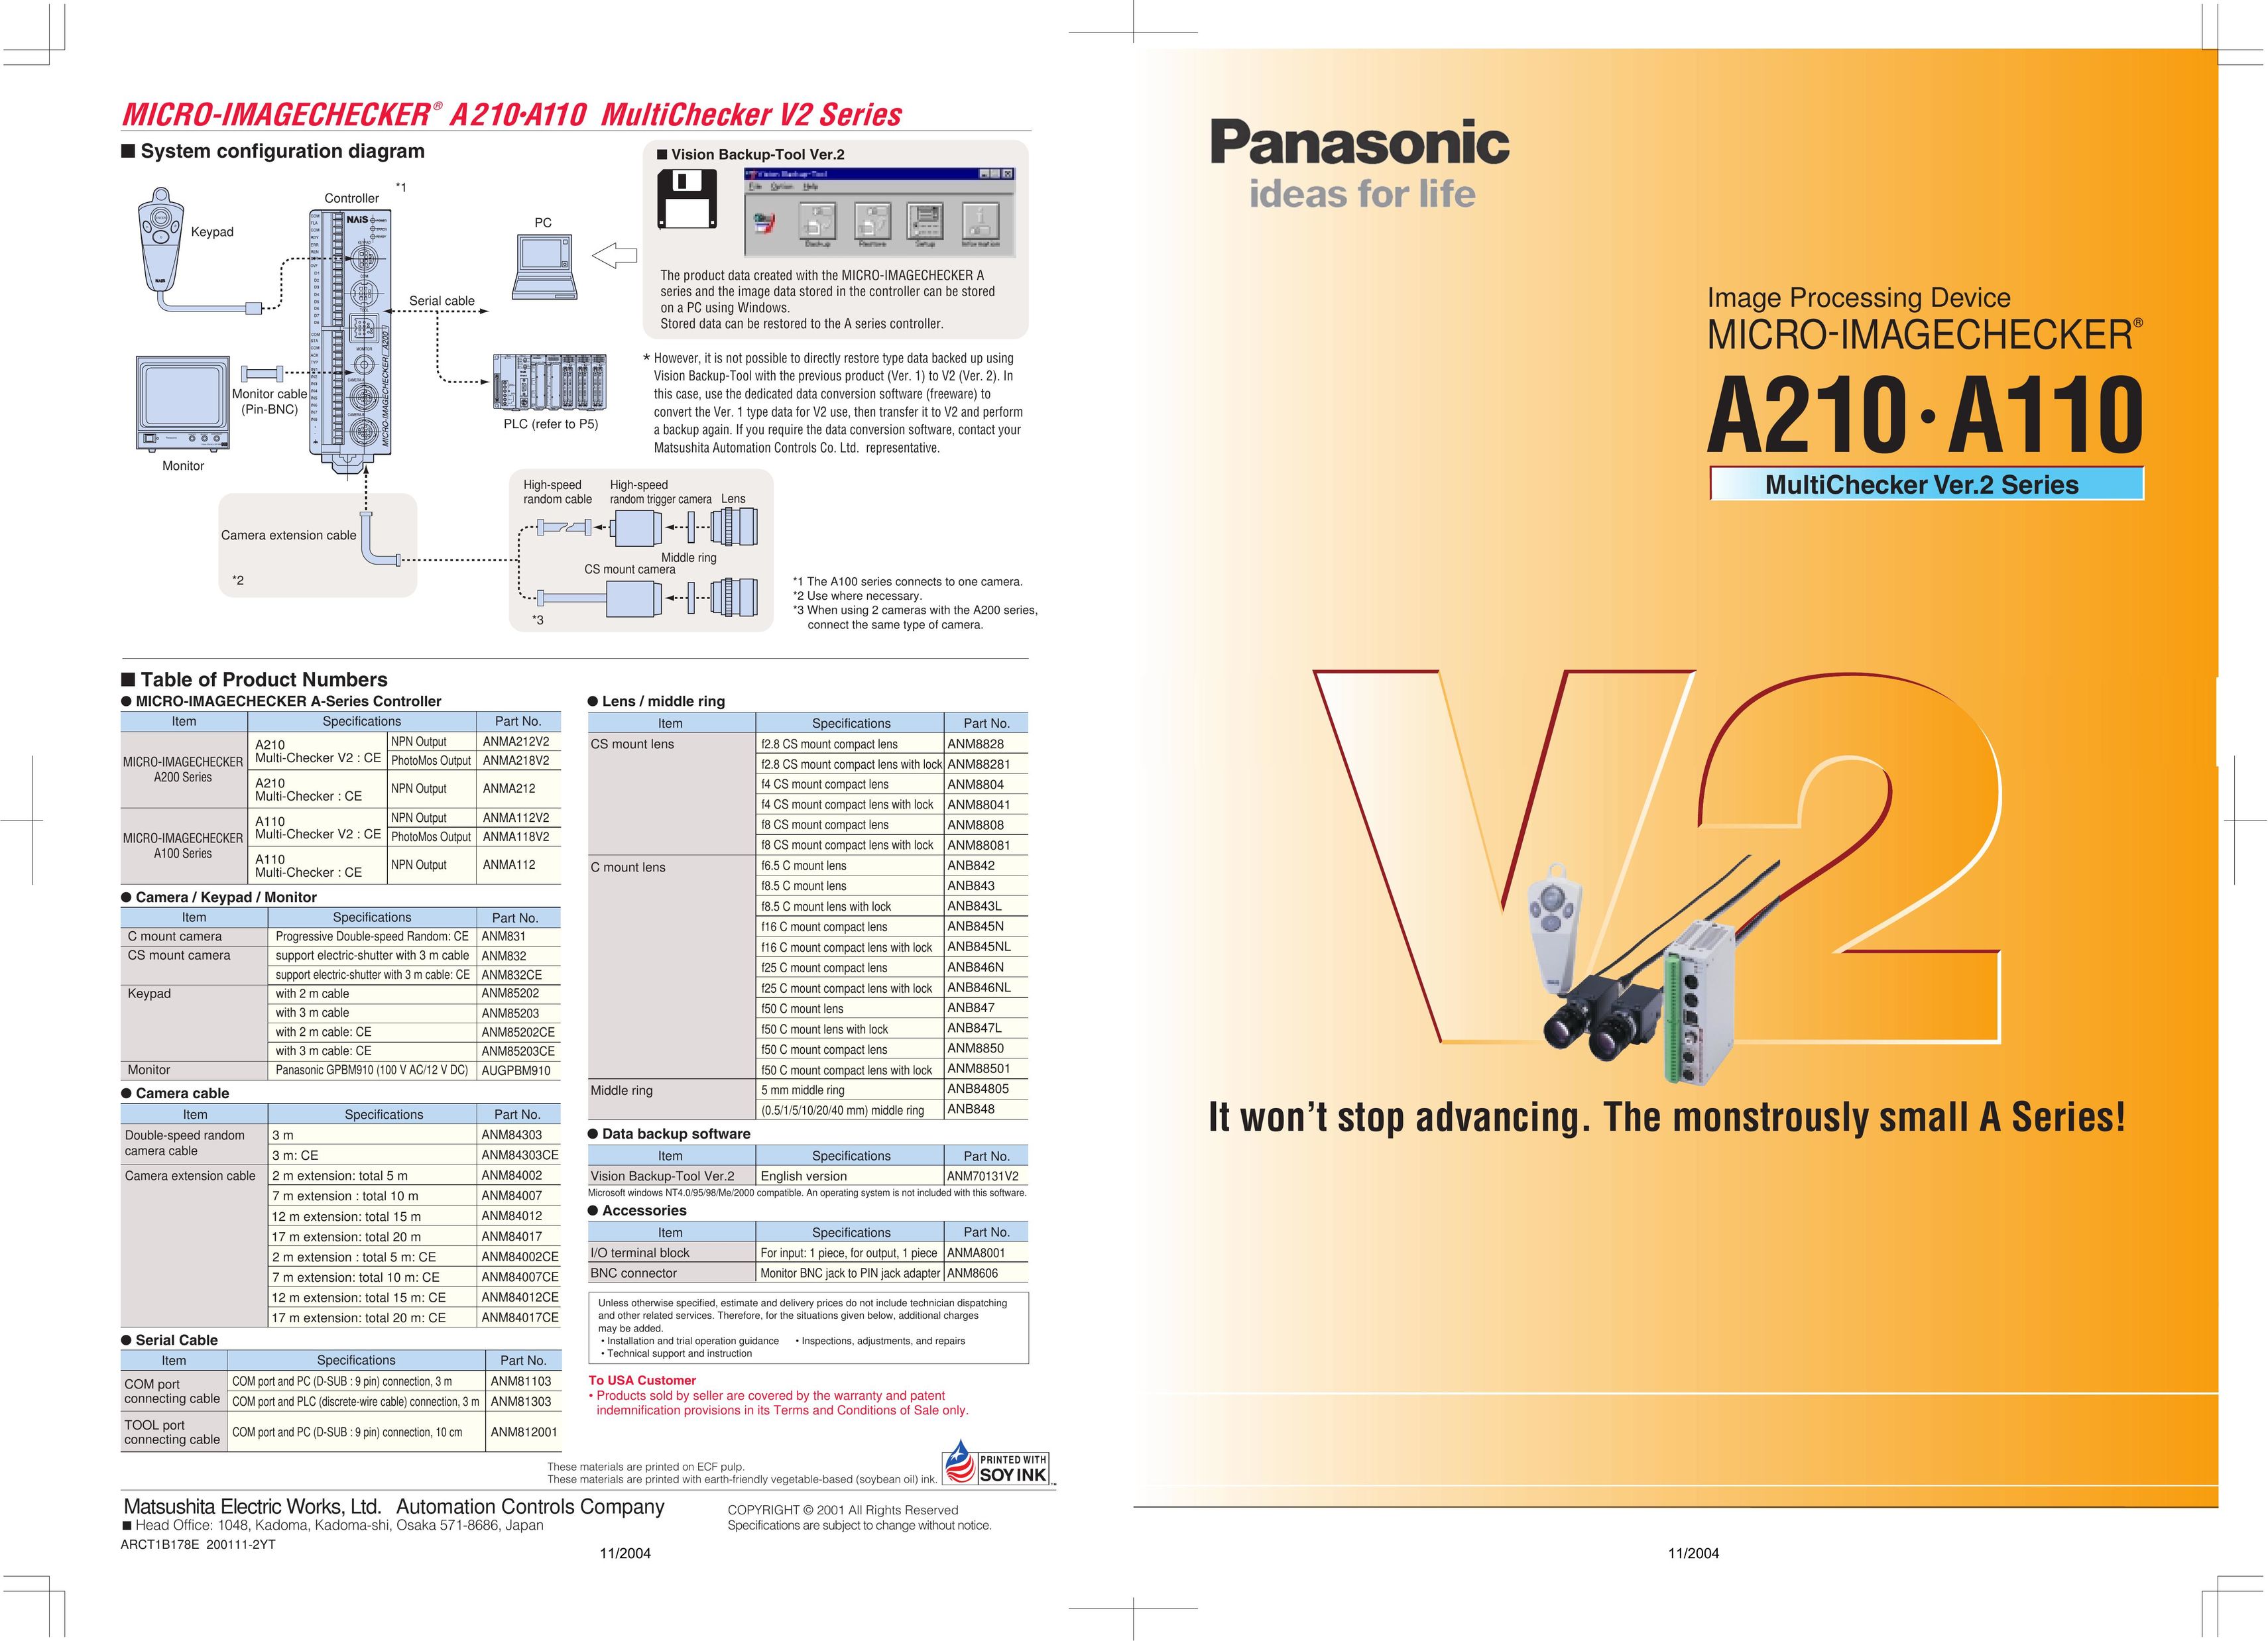 Panasonic A110 Car Speaker User Manual